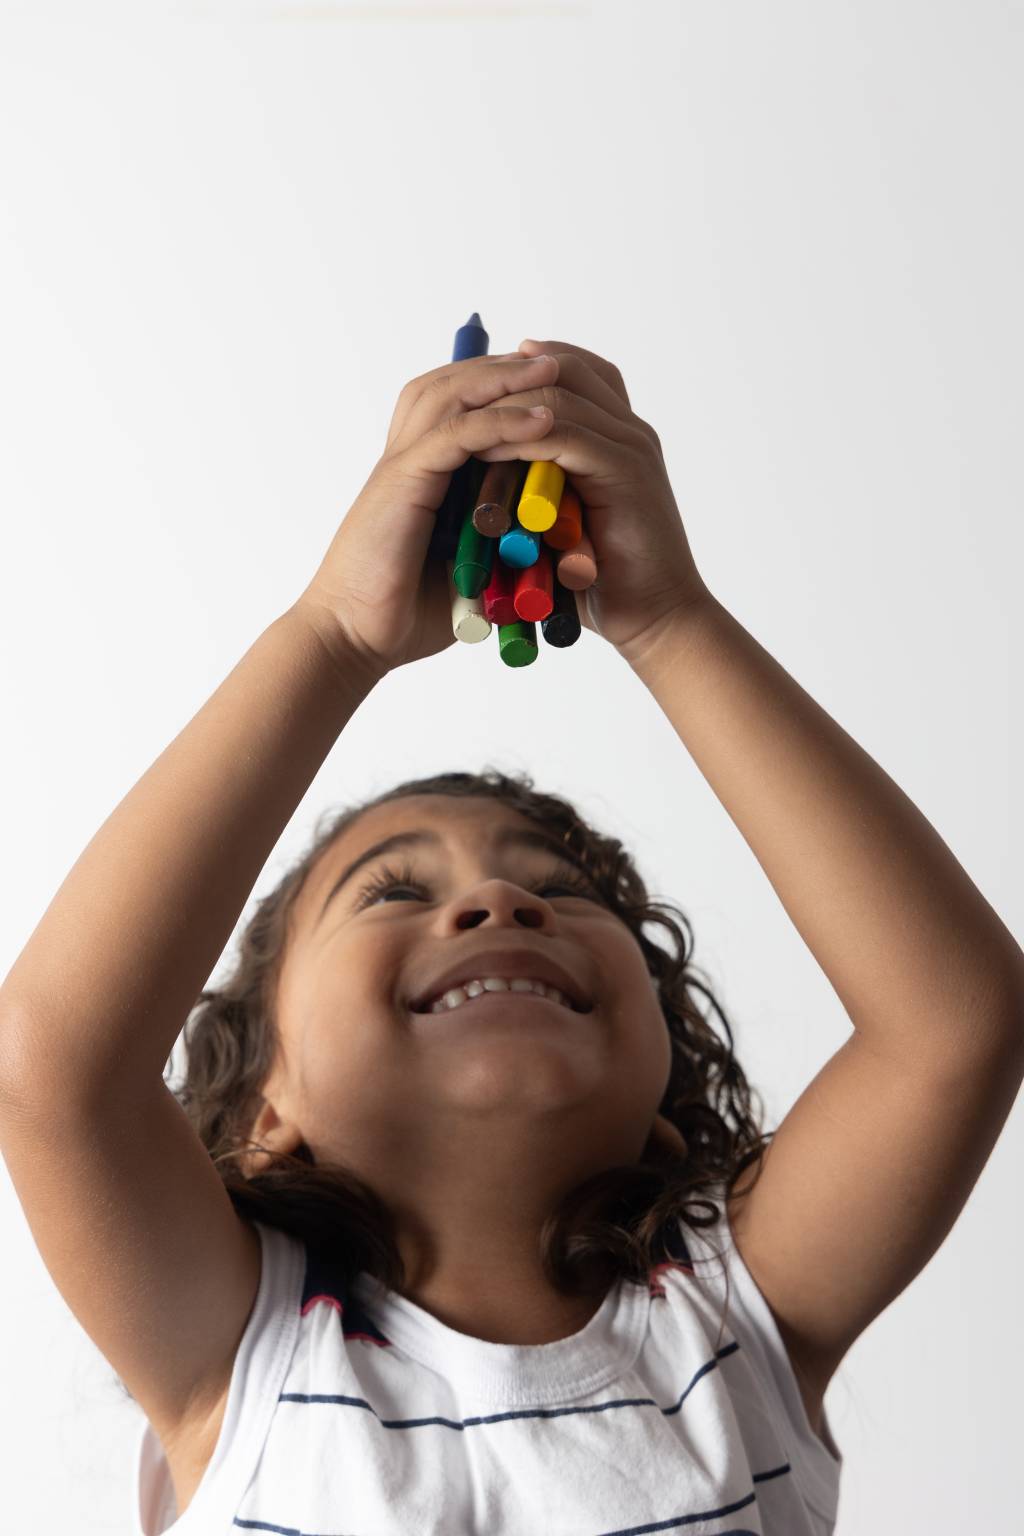 Imagem mostra criança sorrindo, segurando lápis de cor entre as mãos e os erguendo para cima